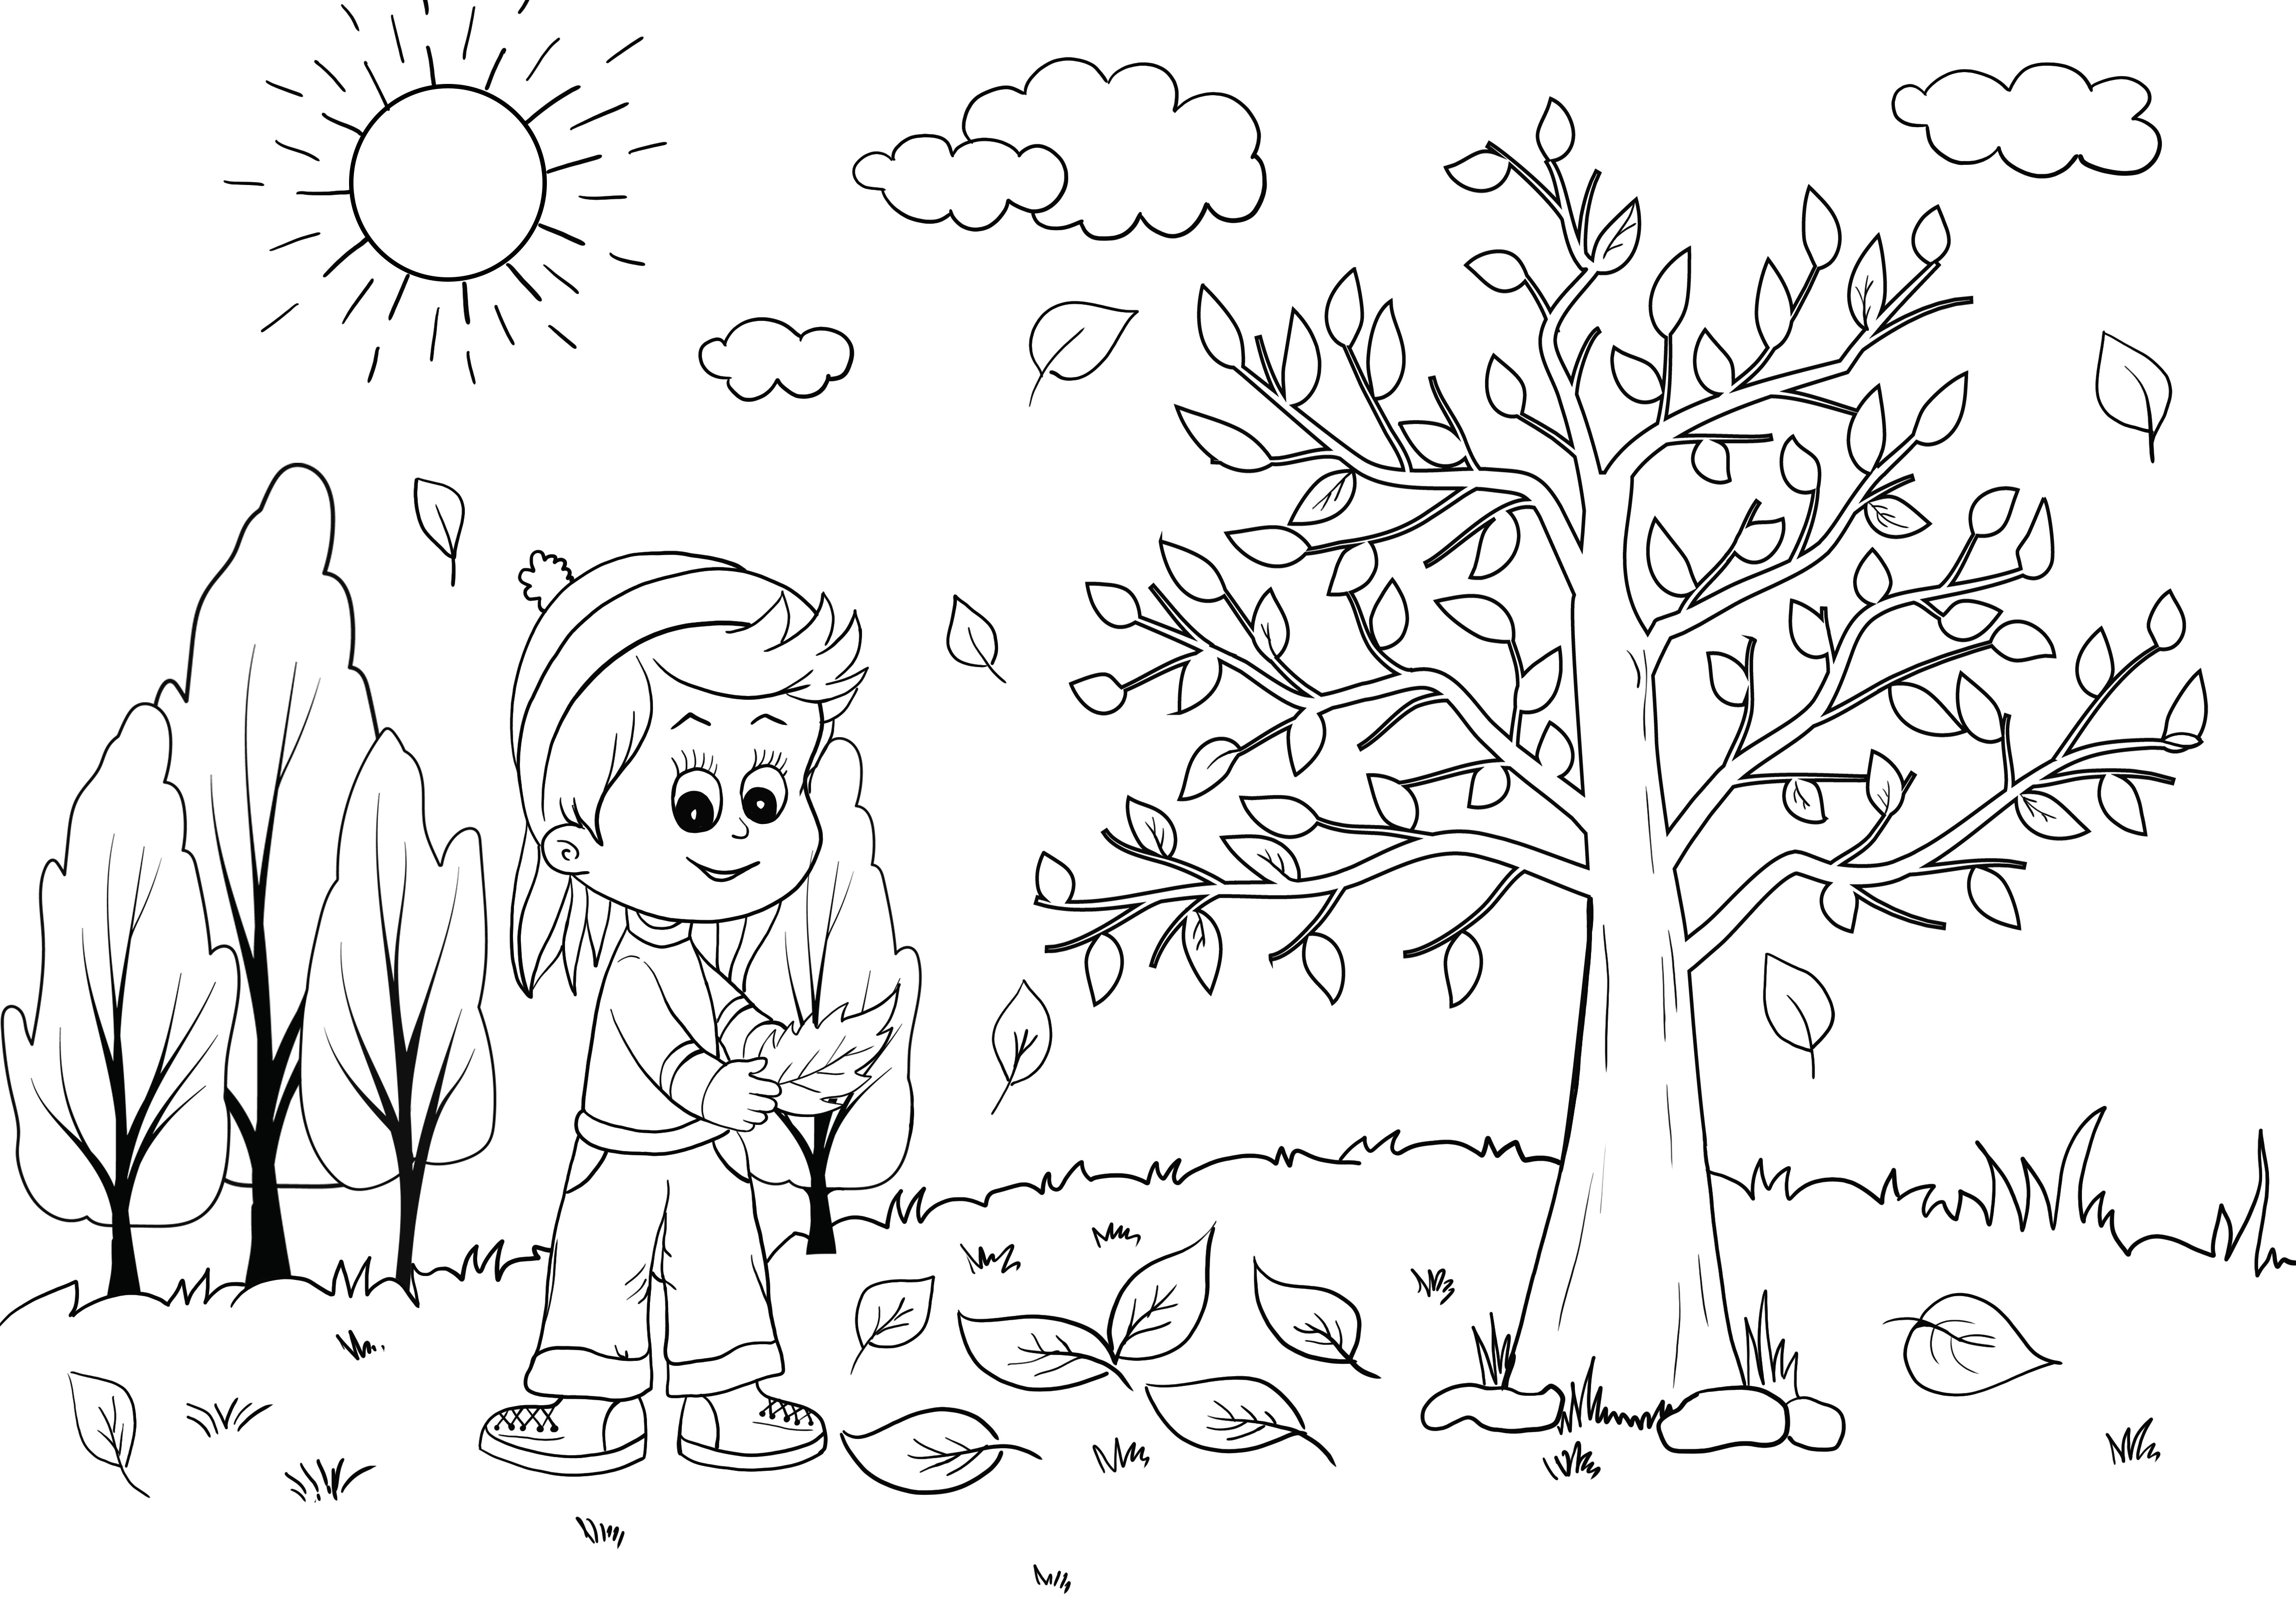 fiú az erdőben ősszel színezés nélküli nyomtatás